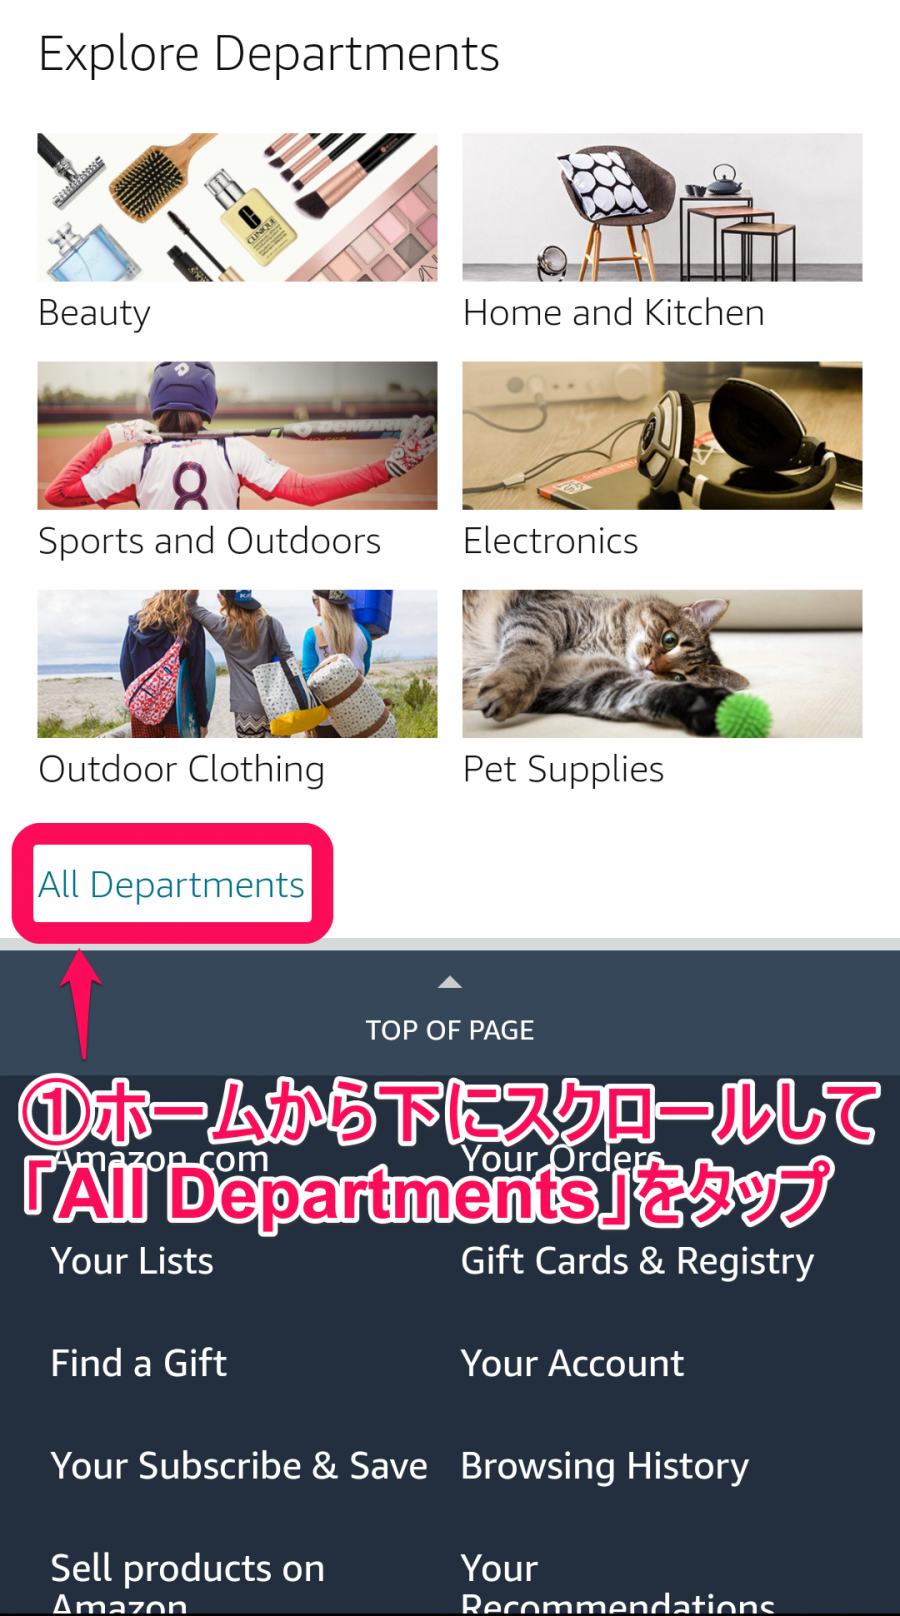 Amazon.comホーム→All Departments